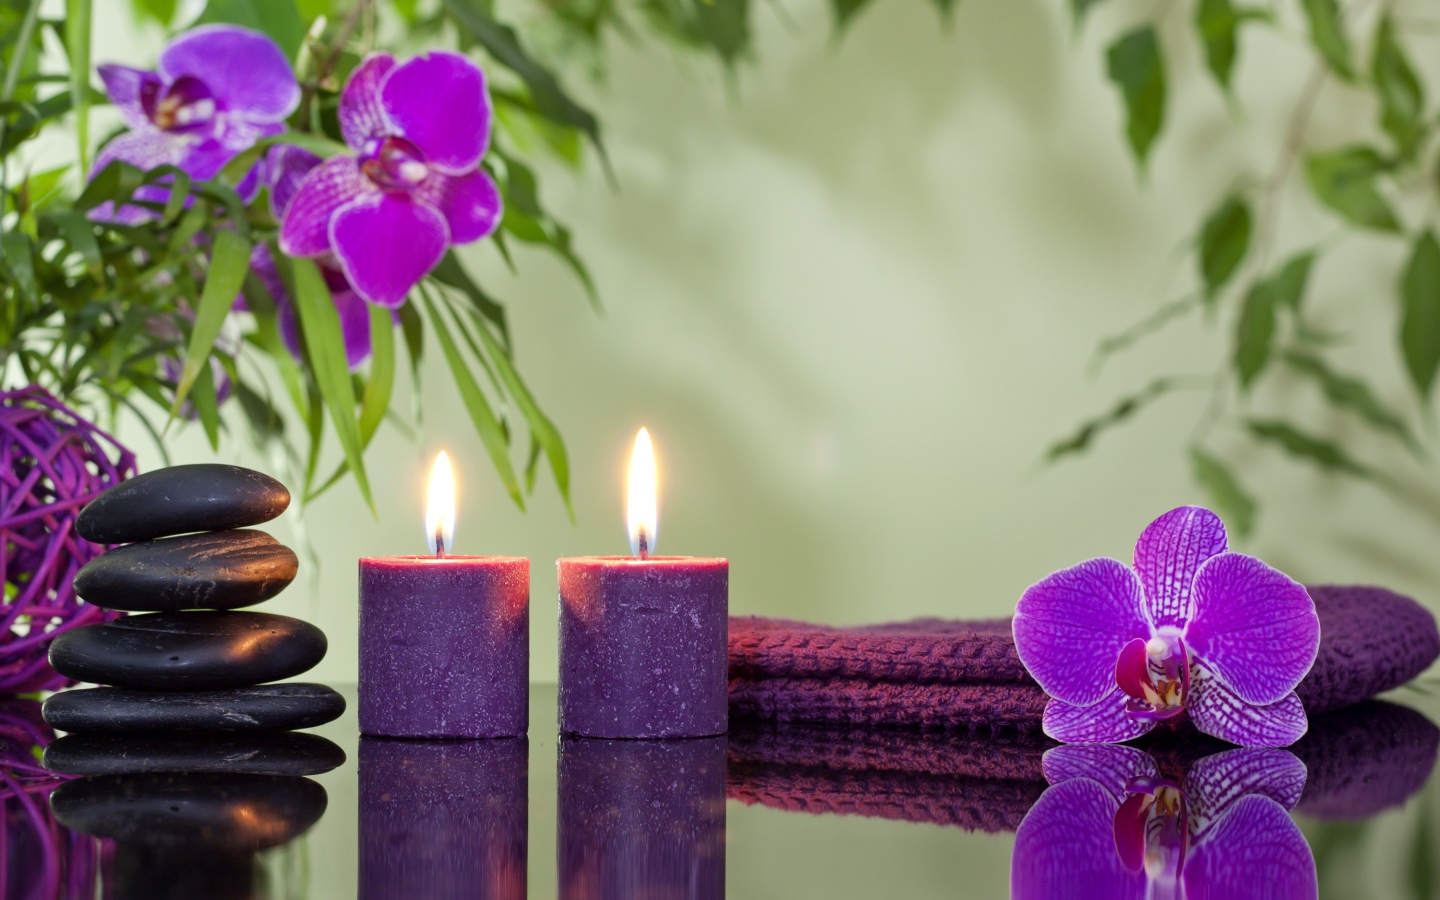 Две горящие свечи с камнями и цветами орхидеи отражаются в зеркальной поверхности стола